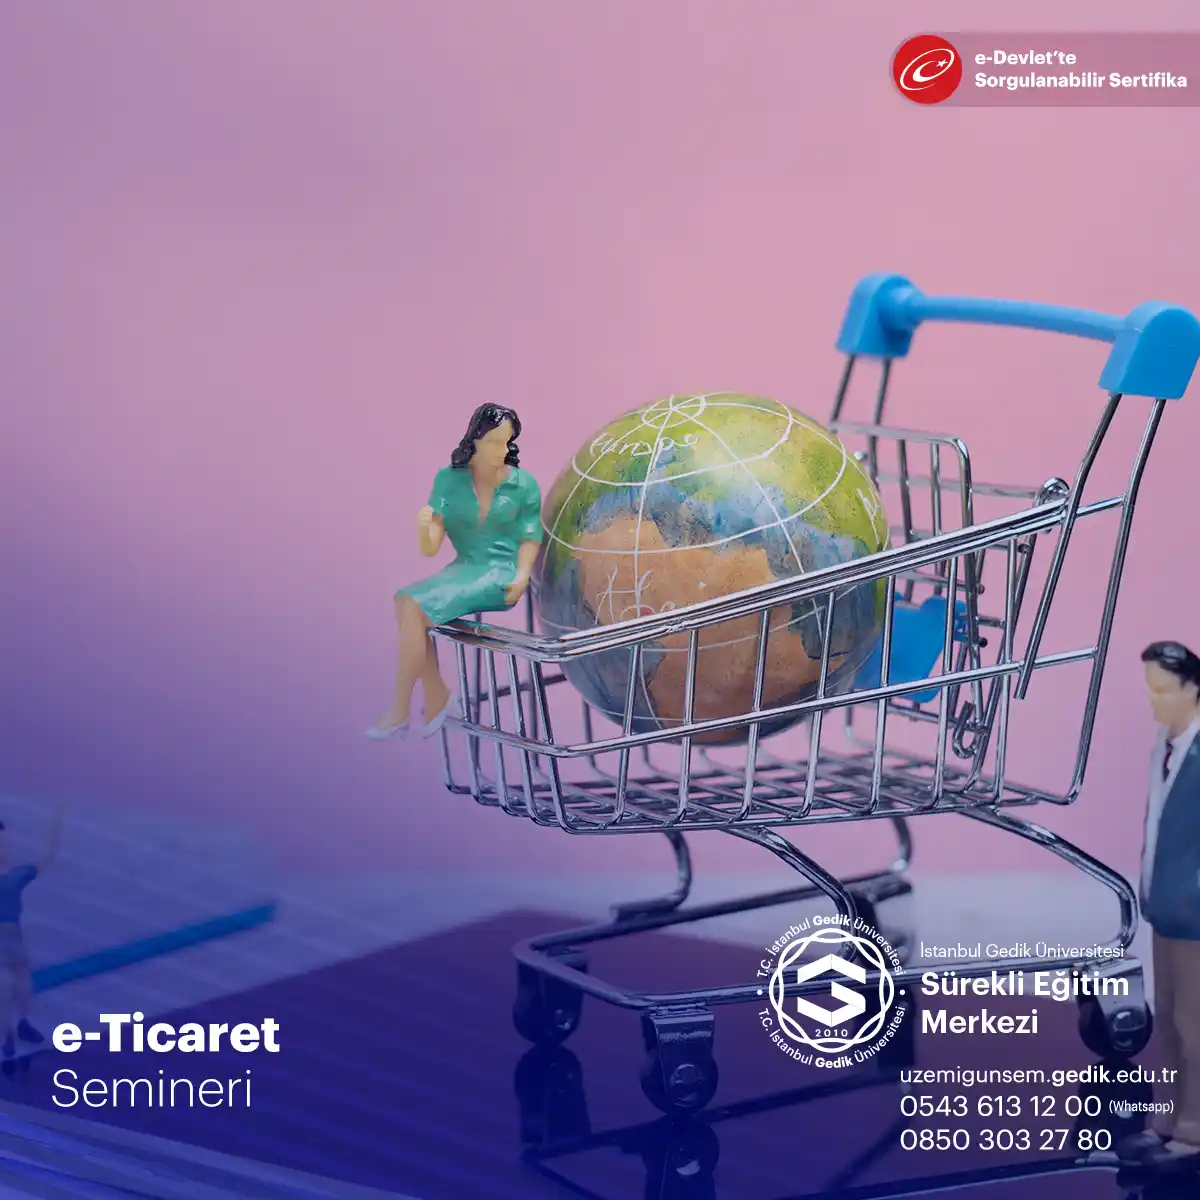 E-ticaret, internet üzerinden ürün ve hizmet alım satımını ifade eder ve günümüzde alışveriş alışkanlıklarını köklü bir şekilde değiştirmiştir. 